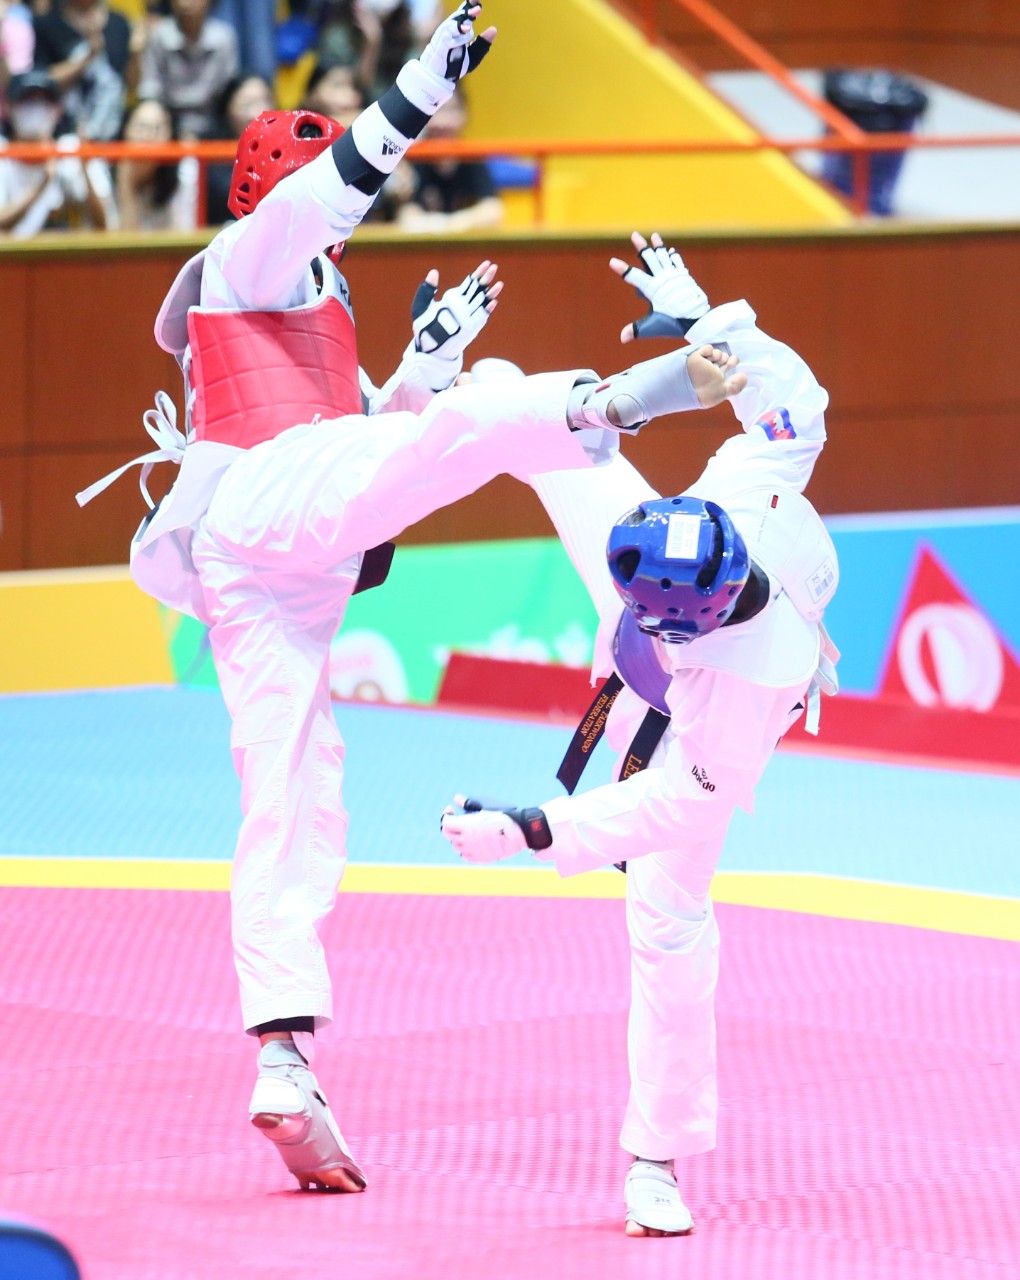 Xem khoảnh khắc võ sĩ Taekwondo Việt Nam đá gục đối thủ trên sàn đấu - Ảnh 2.